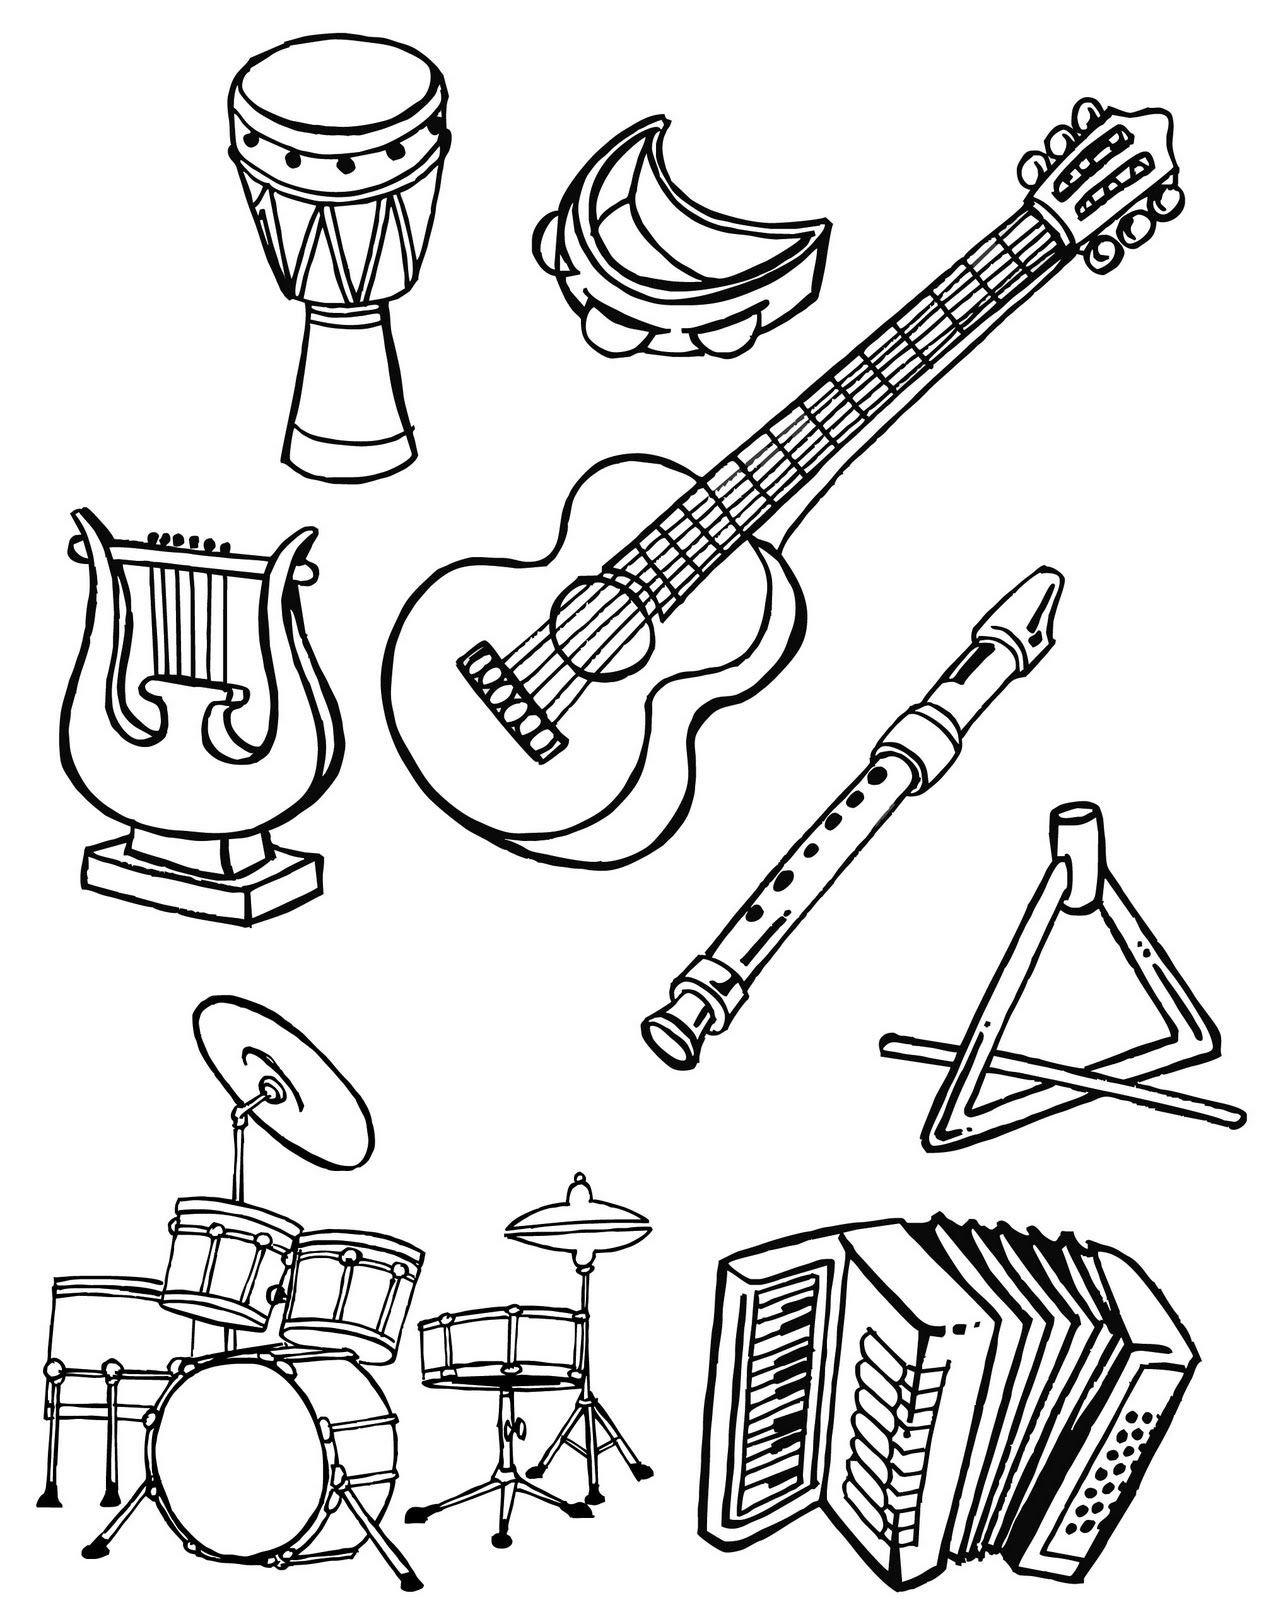 Учим музыкальные инструменты. Музыкальные инструменты раскраска. Раскраска музыкальные инструменты для детей. Раскраски муз инструментов для детей. Раскраска для малышей музыкальные инструменты.